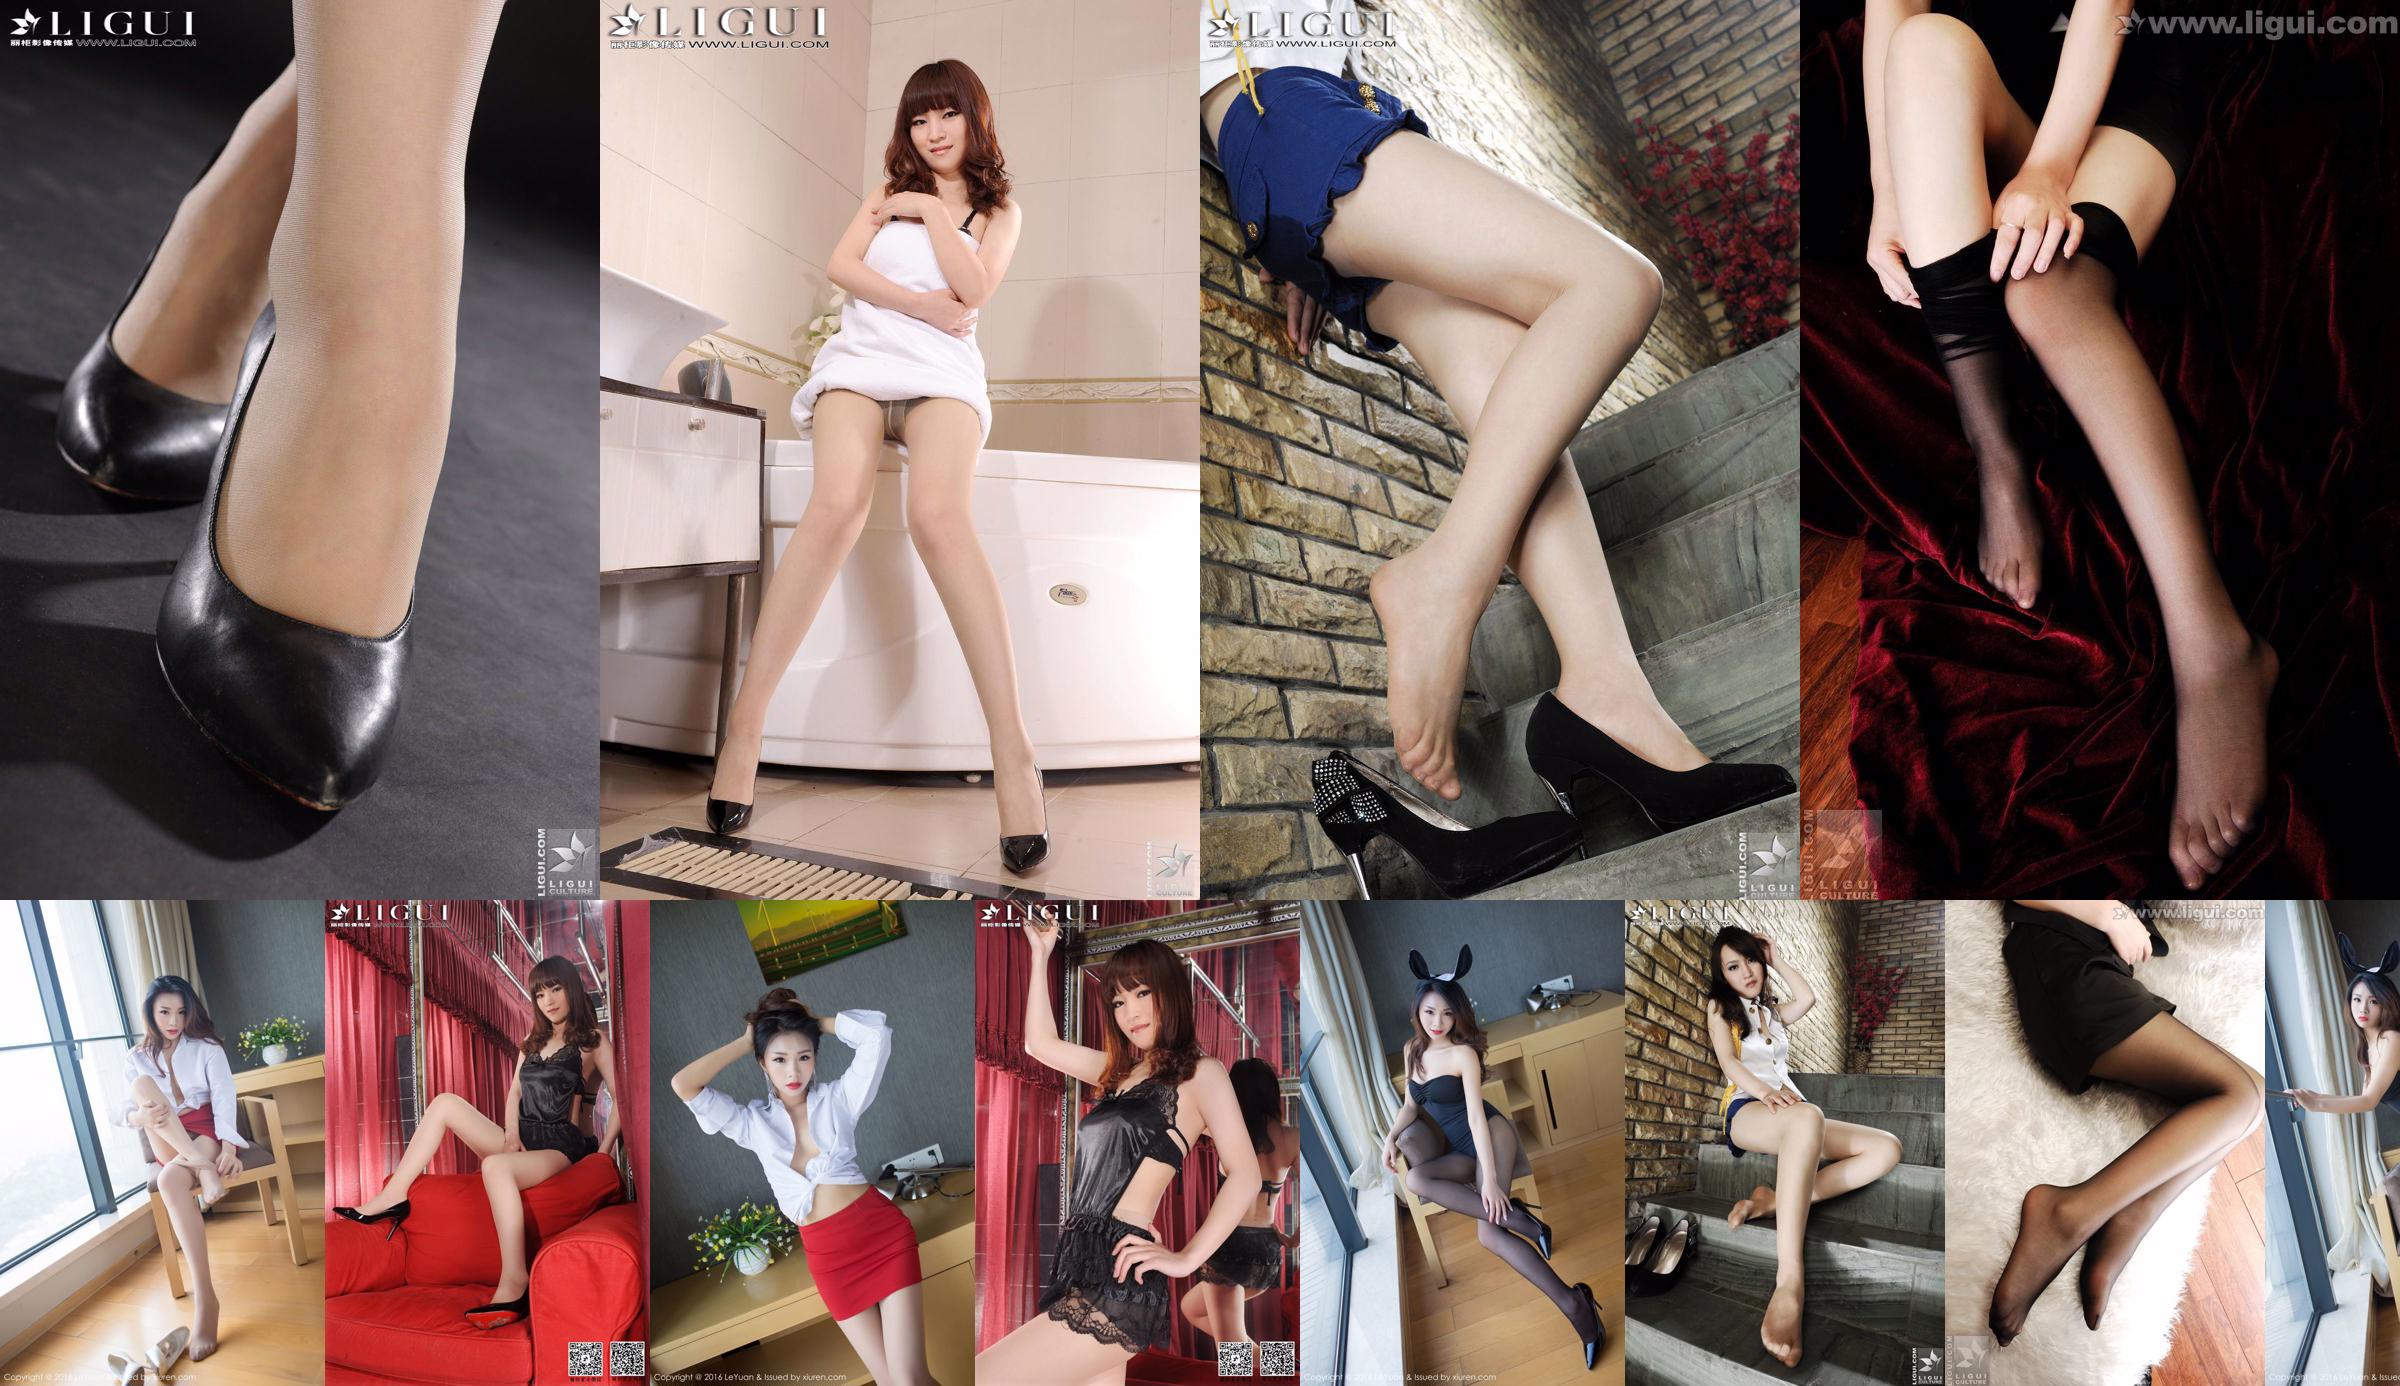 Người mẫu Tina "Indoor Charming Stunner" [丽 柜 LiGui] Ảnh chân dài ngọc nữ No.b344b0 Trang 1